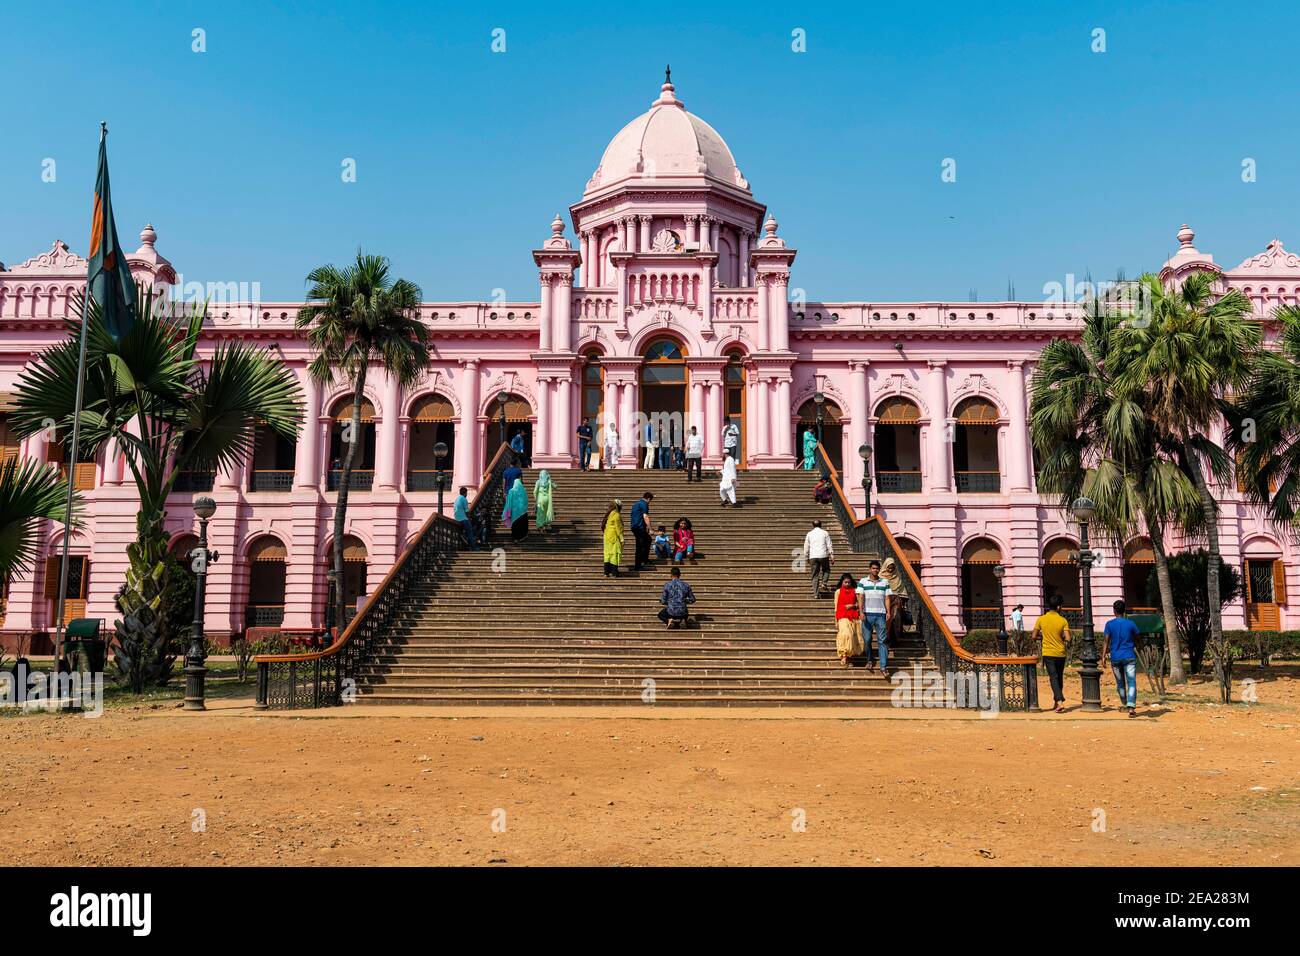 Entrance of the Pink palace, Ahsan Manzil, Dhaka, Bangladesh Stock Photo